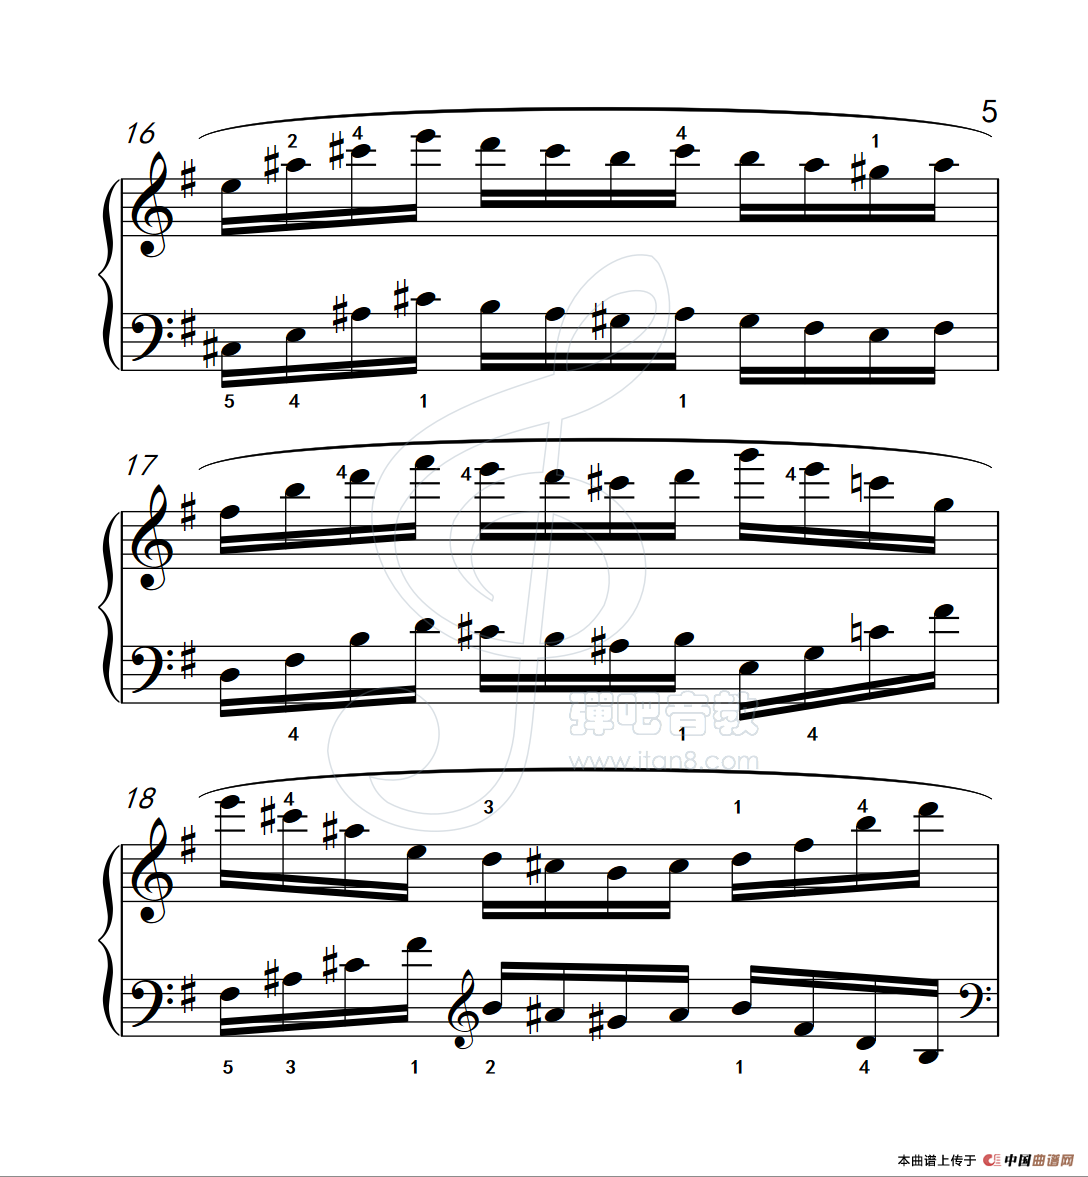 《练习曲 35》钢琴曲谱图分享